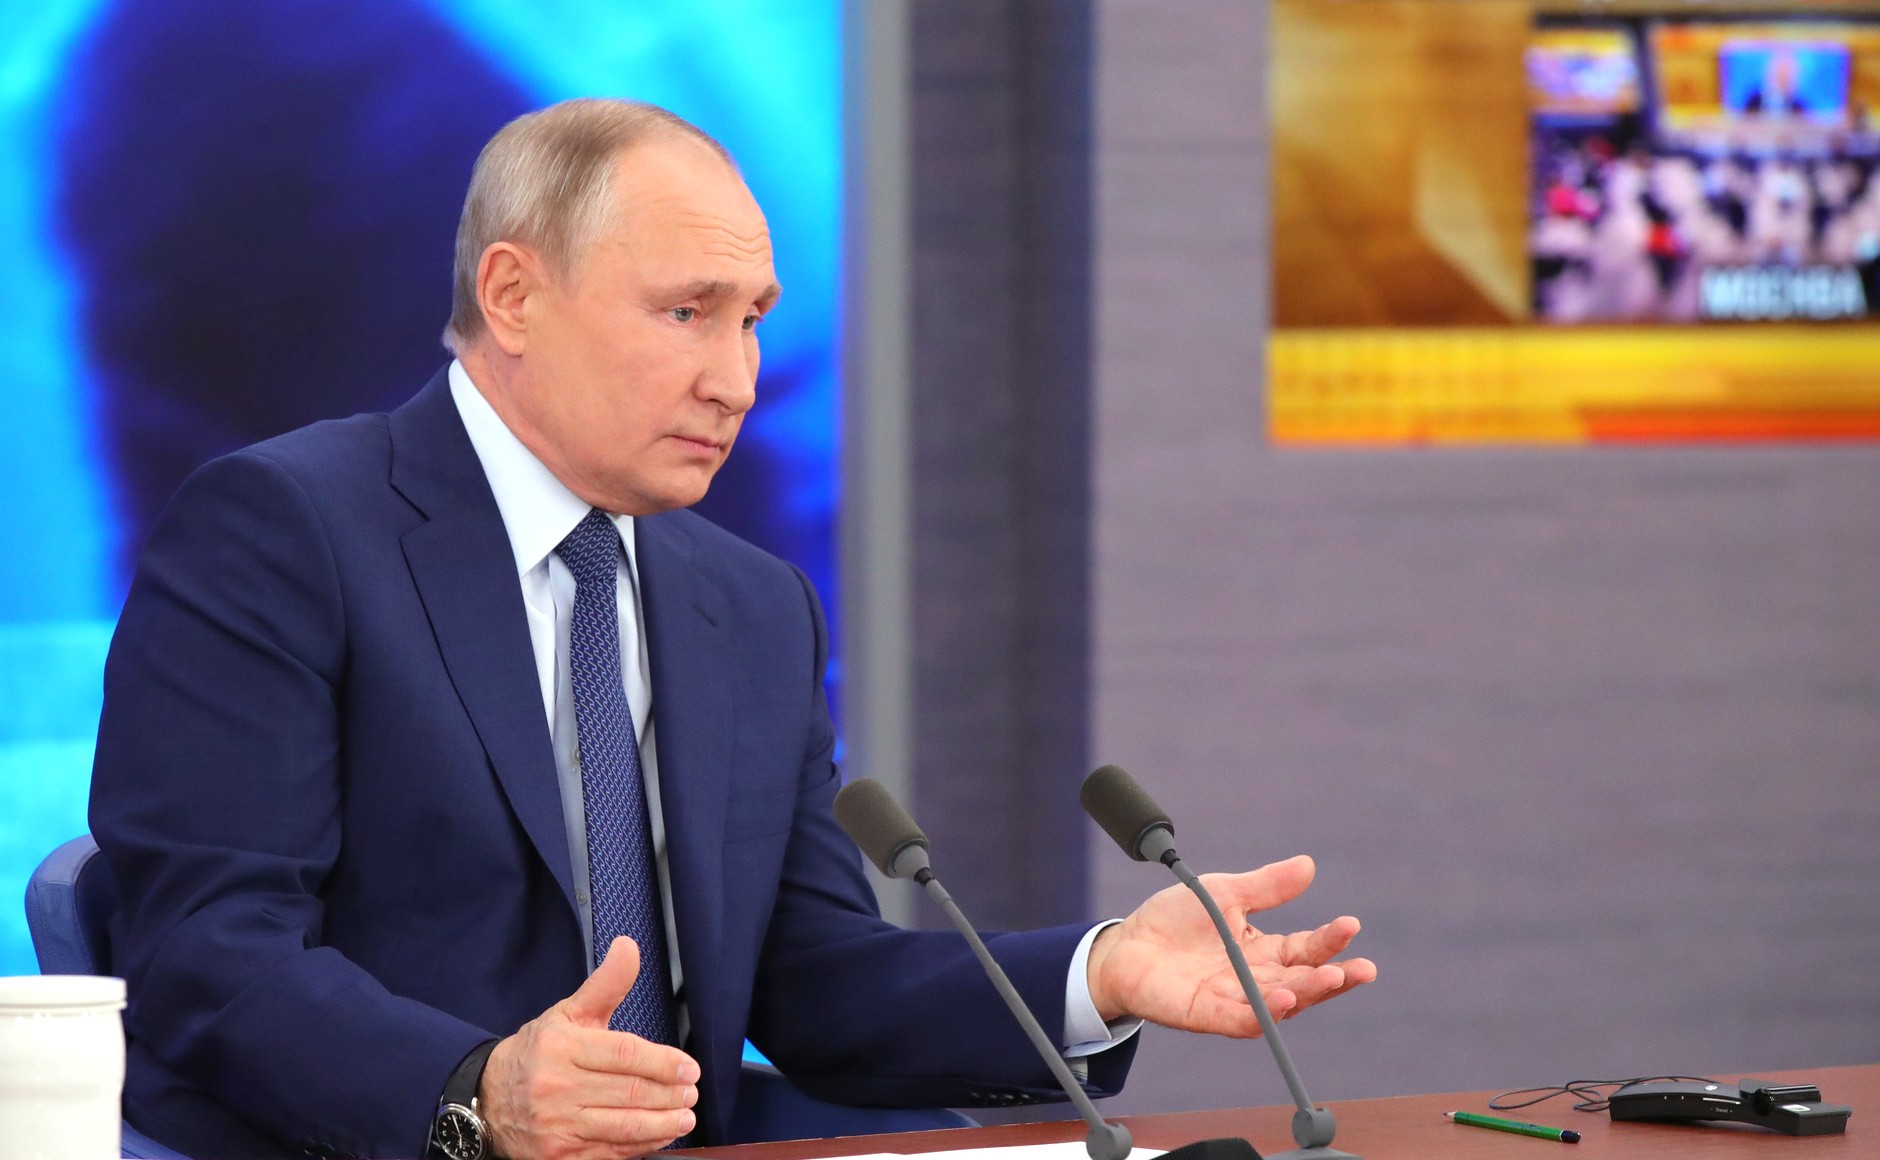 Состоялась большая пресс-конференция Владимира Путина